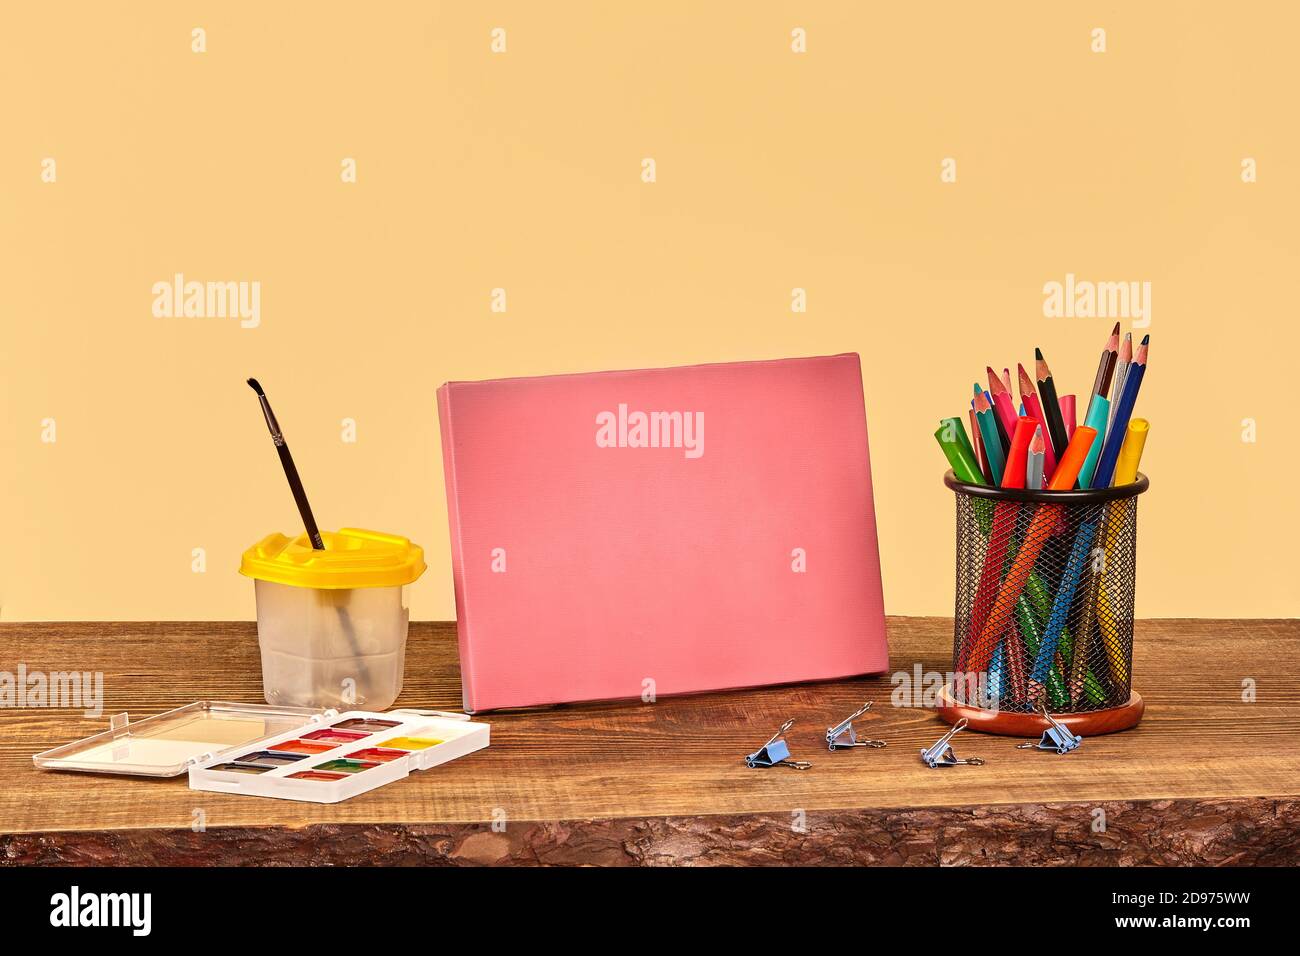 Toile rose, aquarelle, pinceau, pinces à reliures, stylos feutres et crayons colorés sur bureau en bois. Arrière-plan beige. Gros plan, espace de copie Banque D'Images